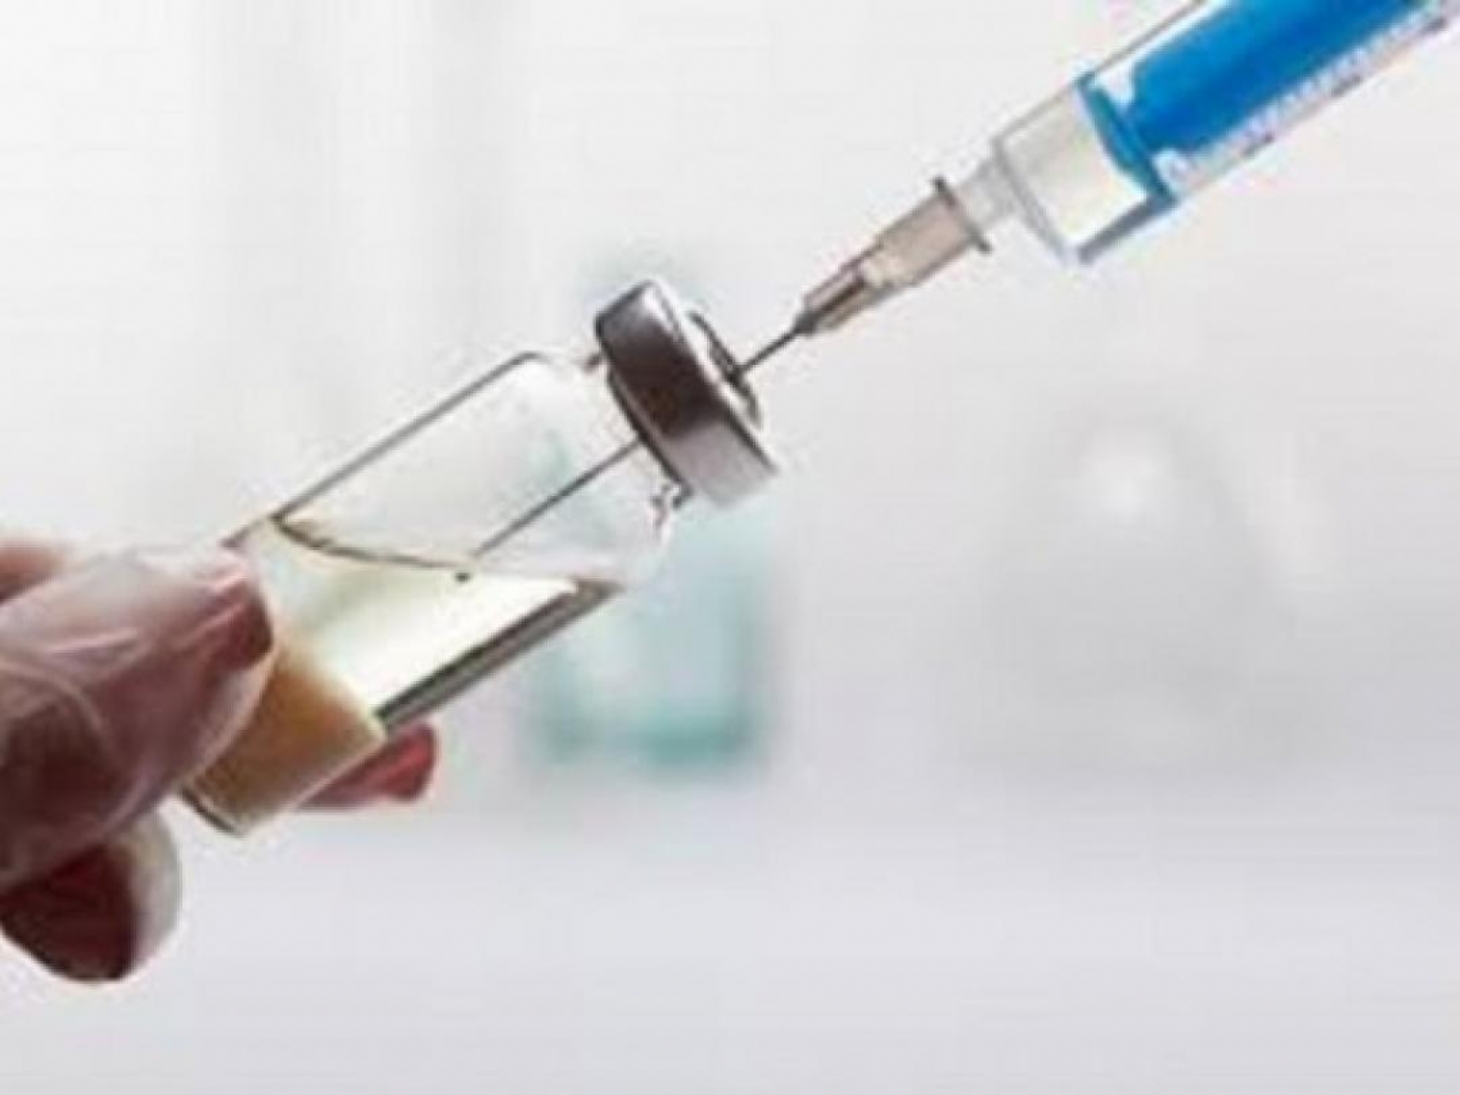 Testes com vacina de Oxford contra covid-19 começam em São Paulo | Jornal da Orla